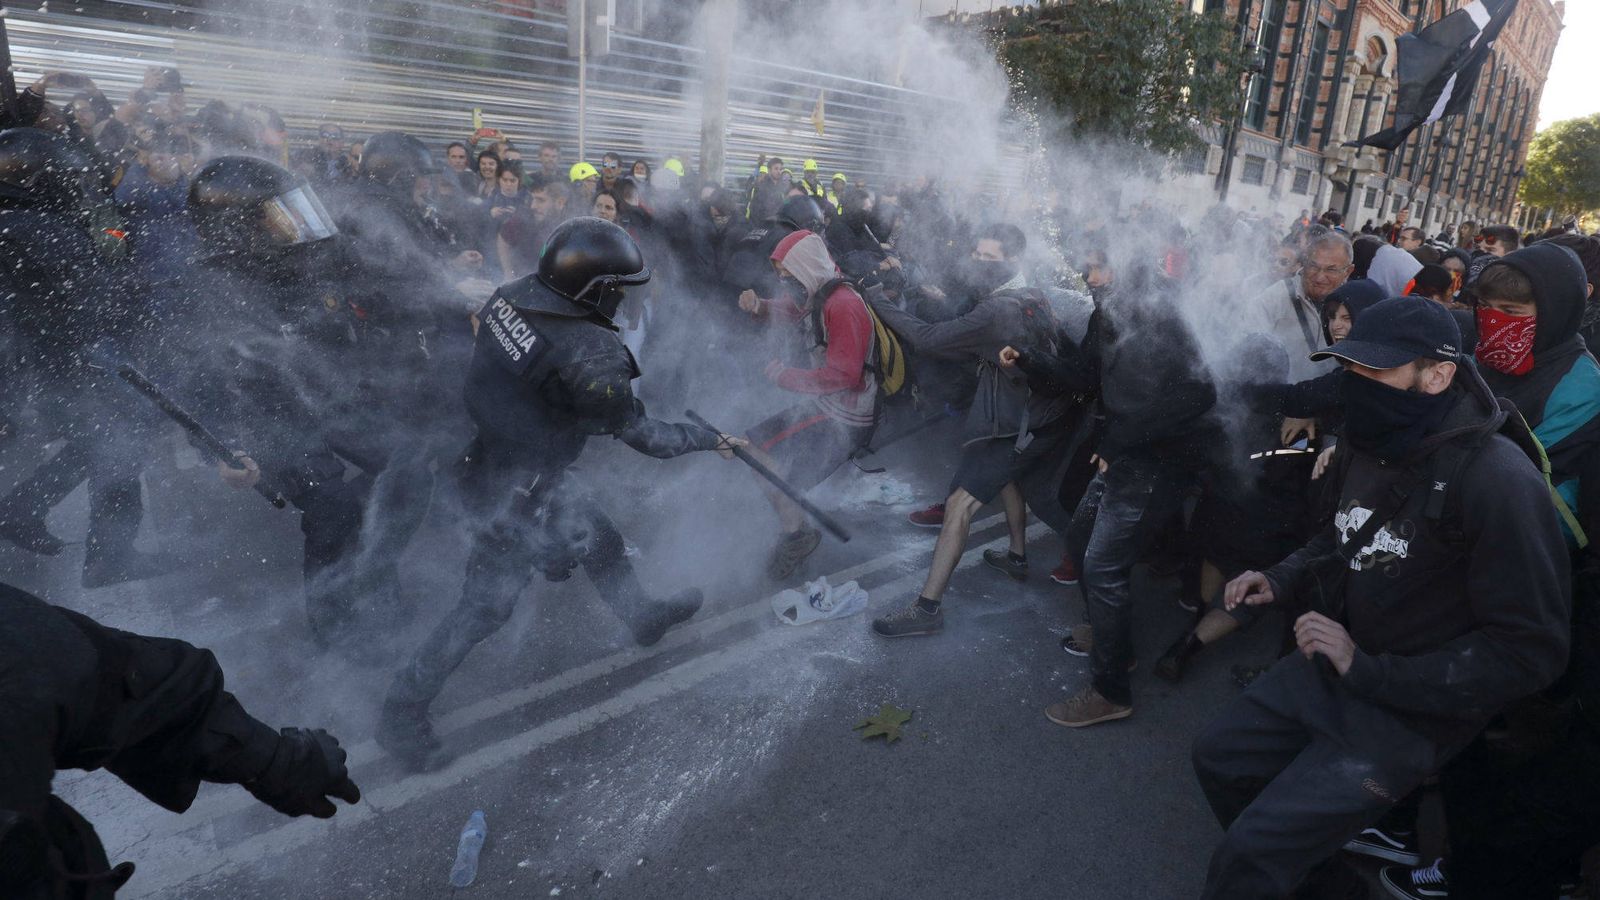 Foto: Imagen de los disturbios en Barcelona. (Reuters)